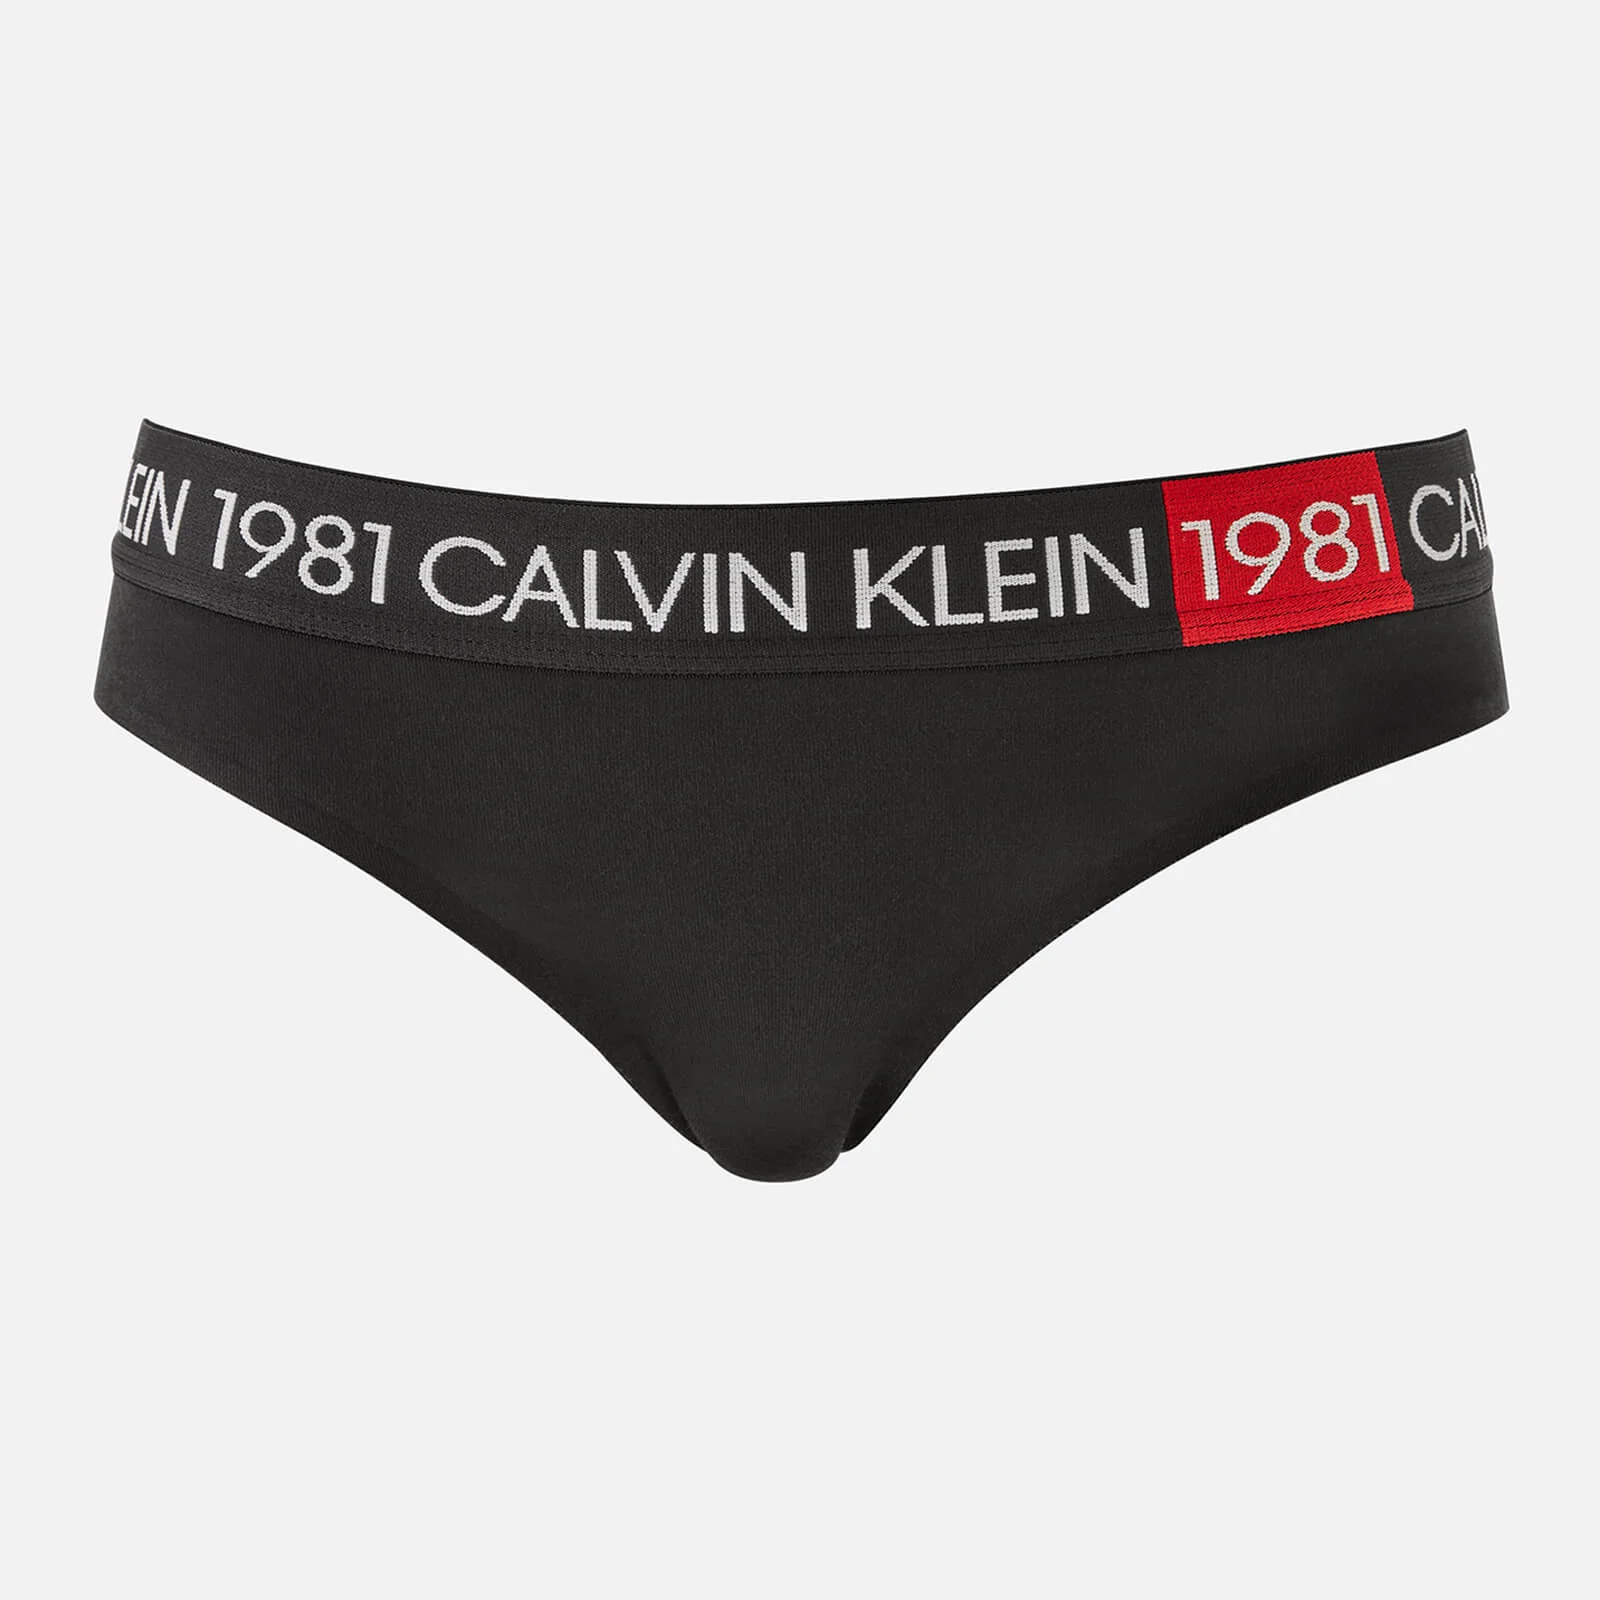 Calvin Klein Women's Ck 1981 Panties - Black Image 1